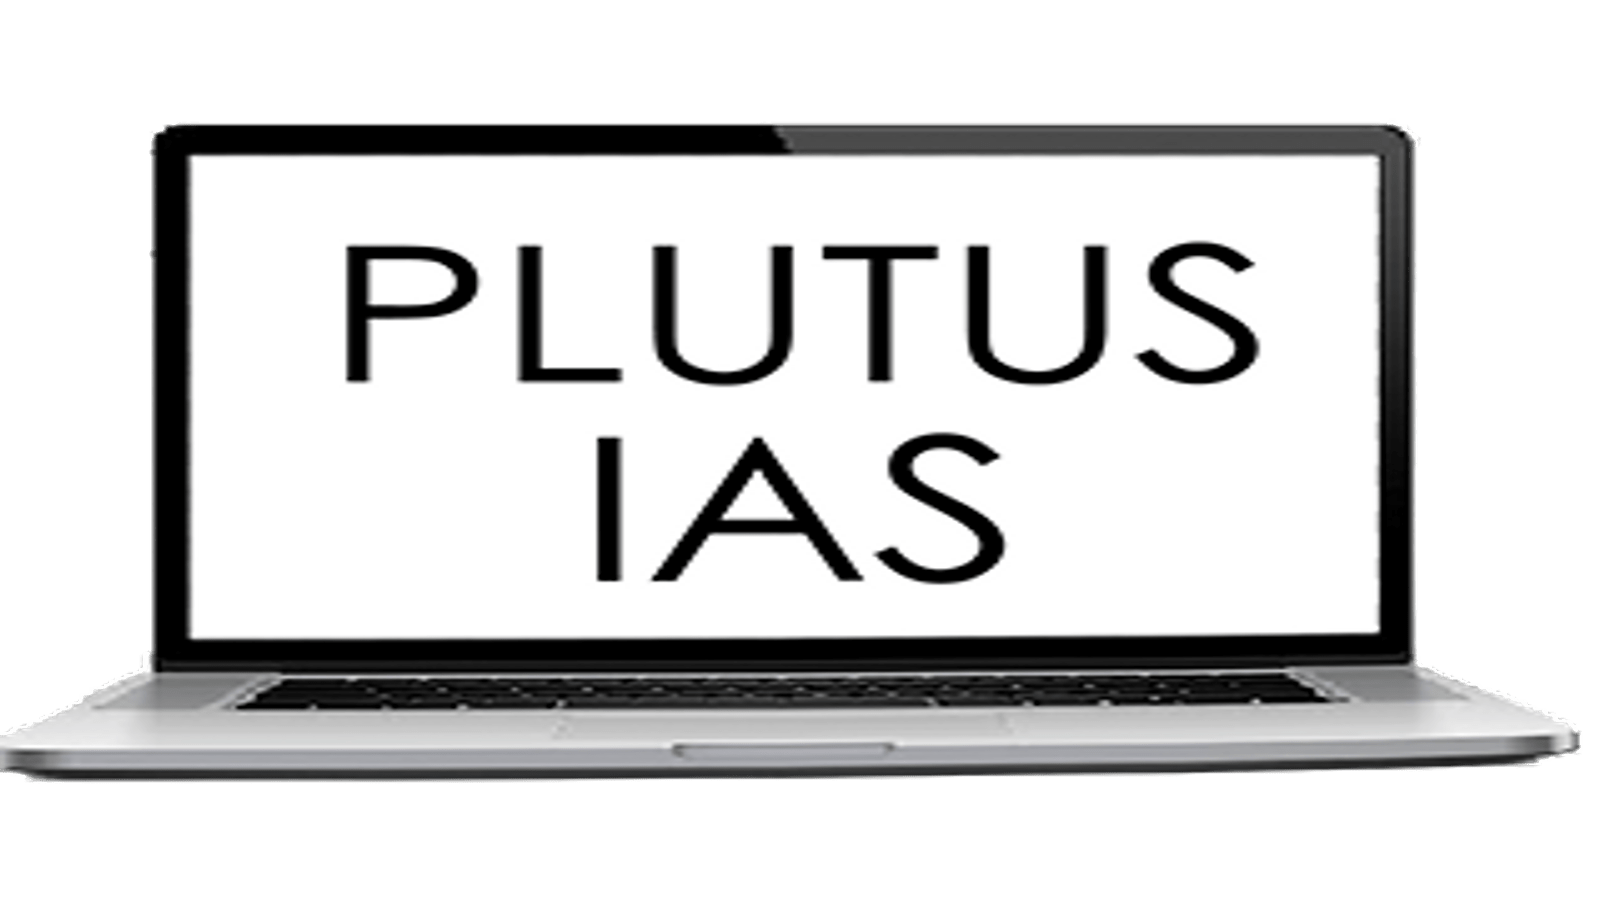 Plutus IAS Online Coaching Jaipur